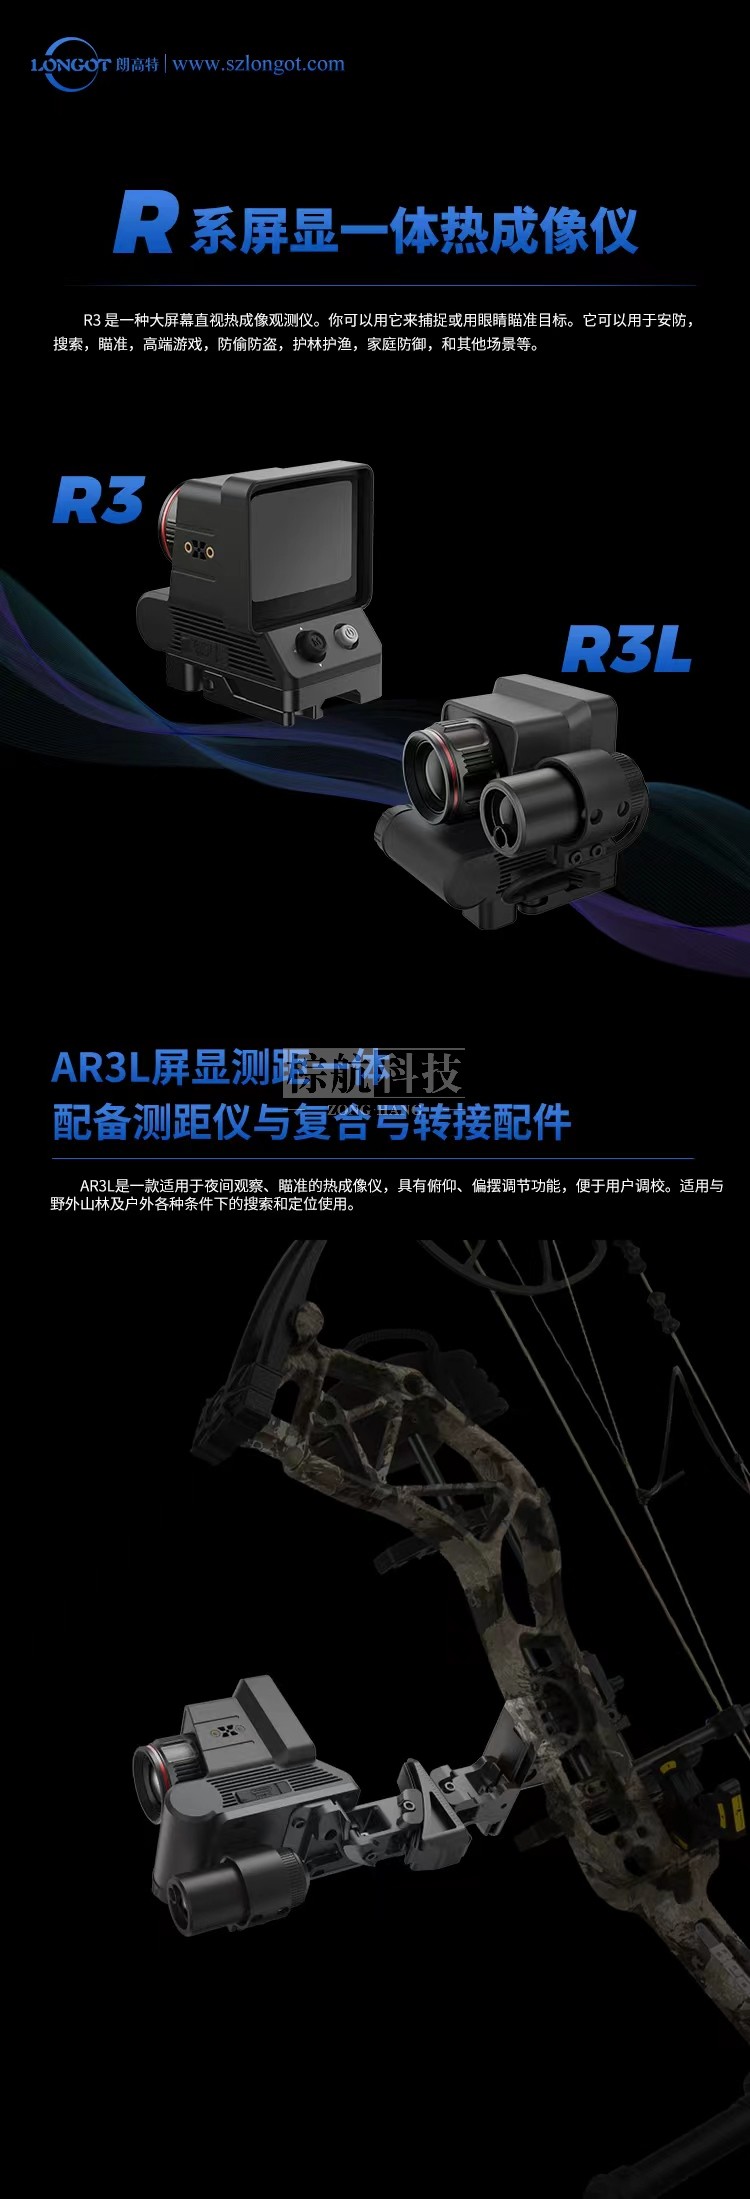 朗高特AR3L热成像 产品及性能介绍.jpg